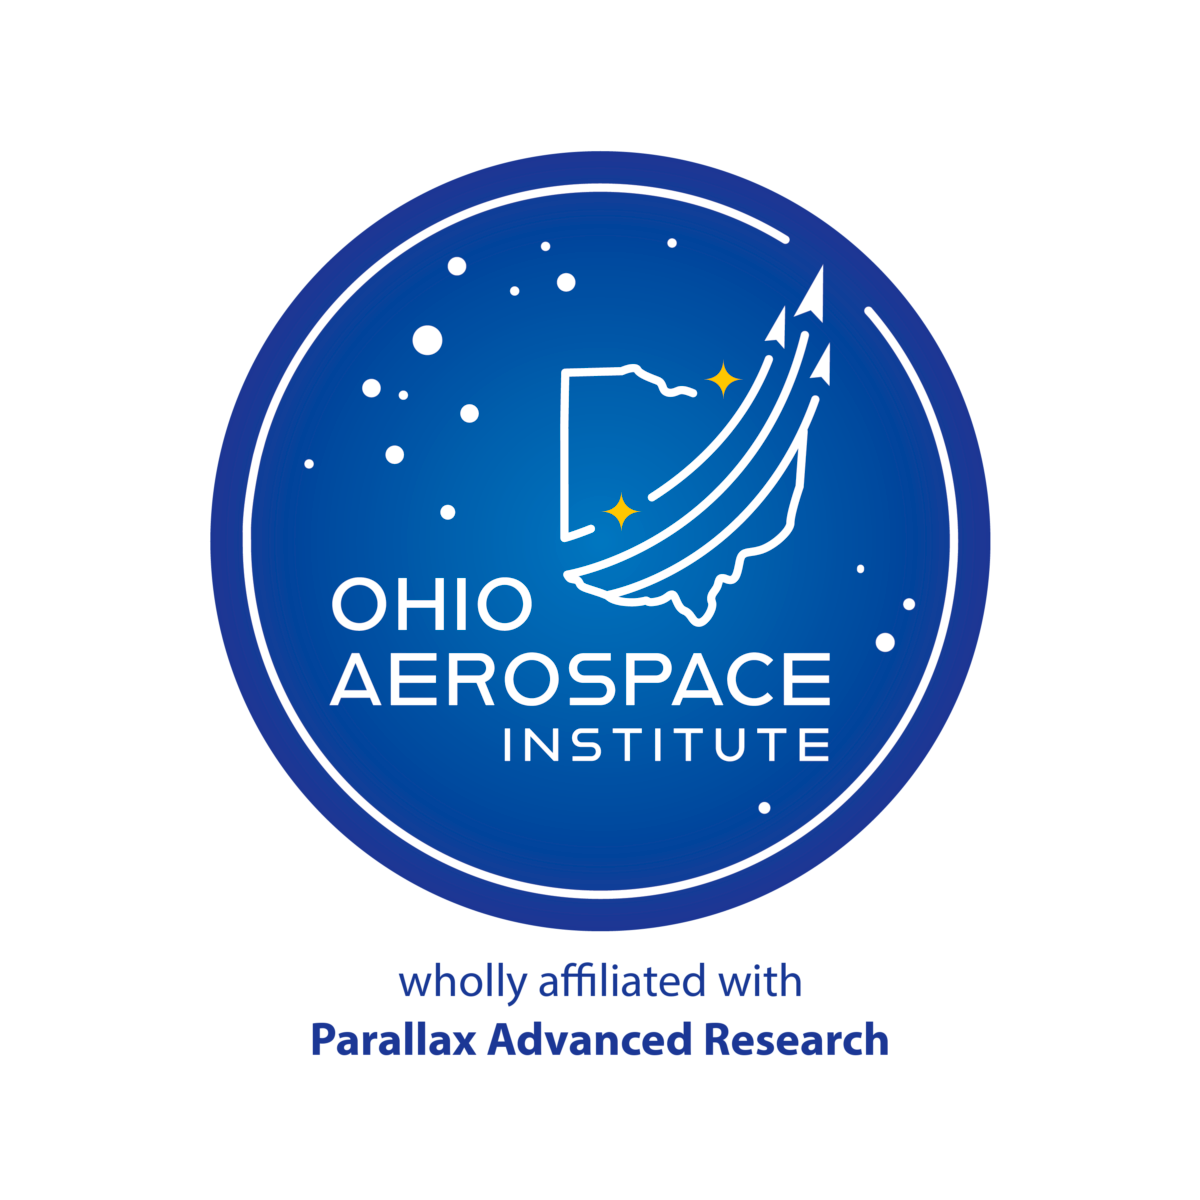 Ohio Aerospace Institute logo.